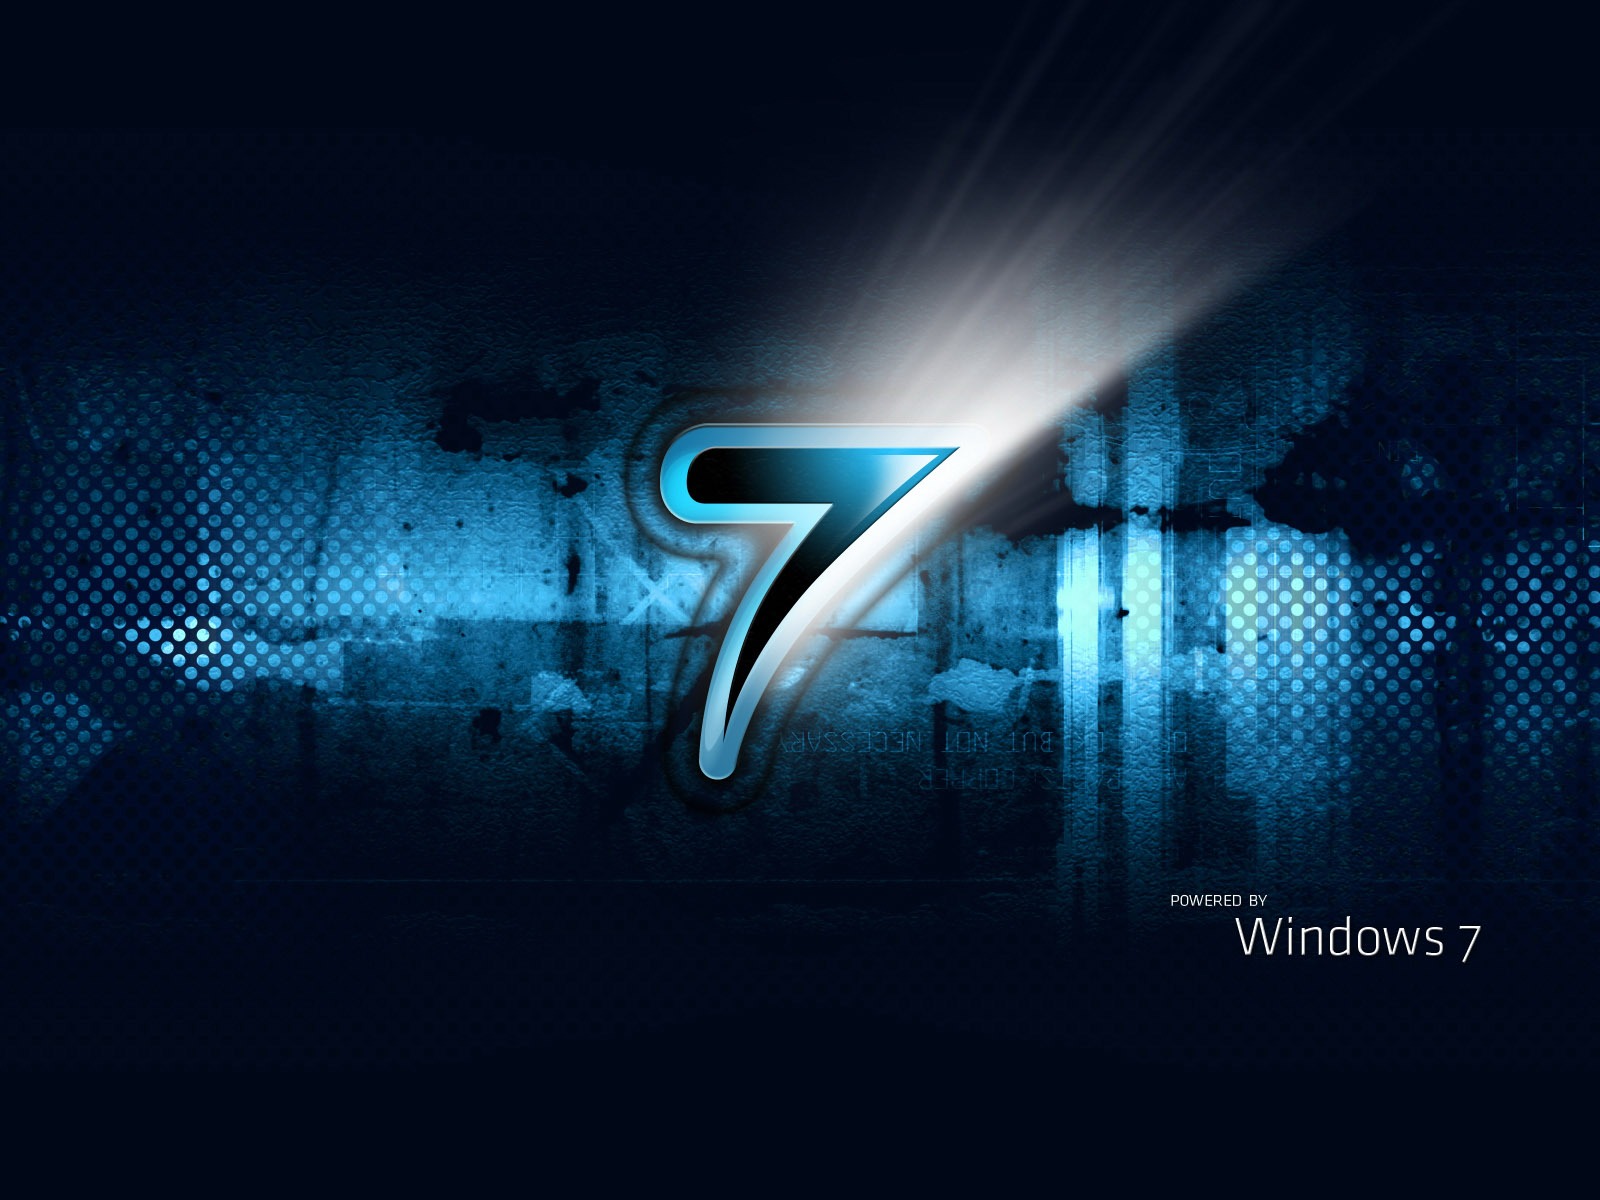 Windows7 theme wallpaper (2) #8 - 1600x1200